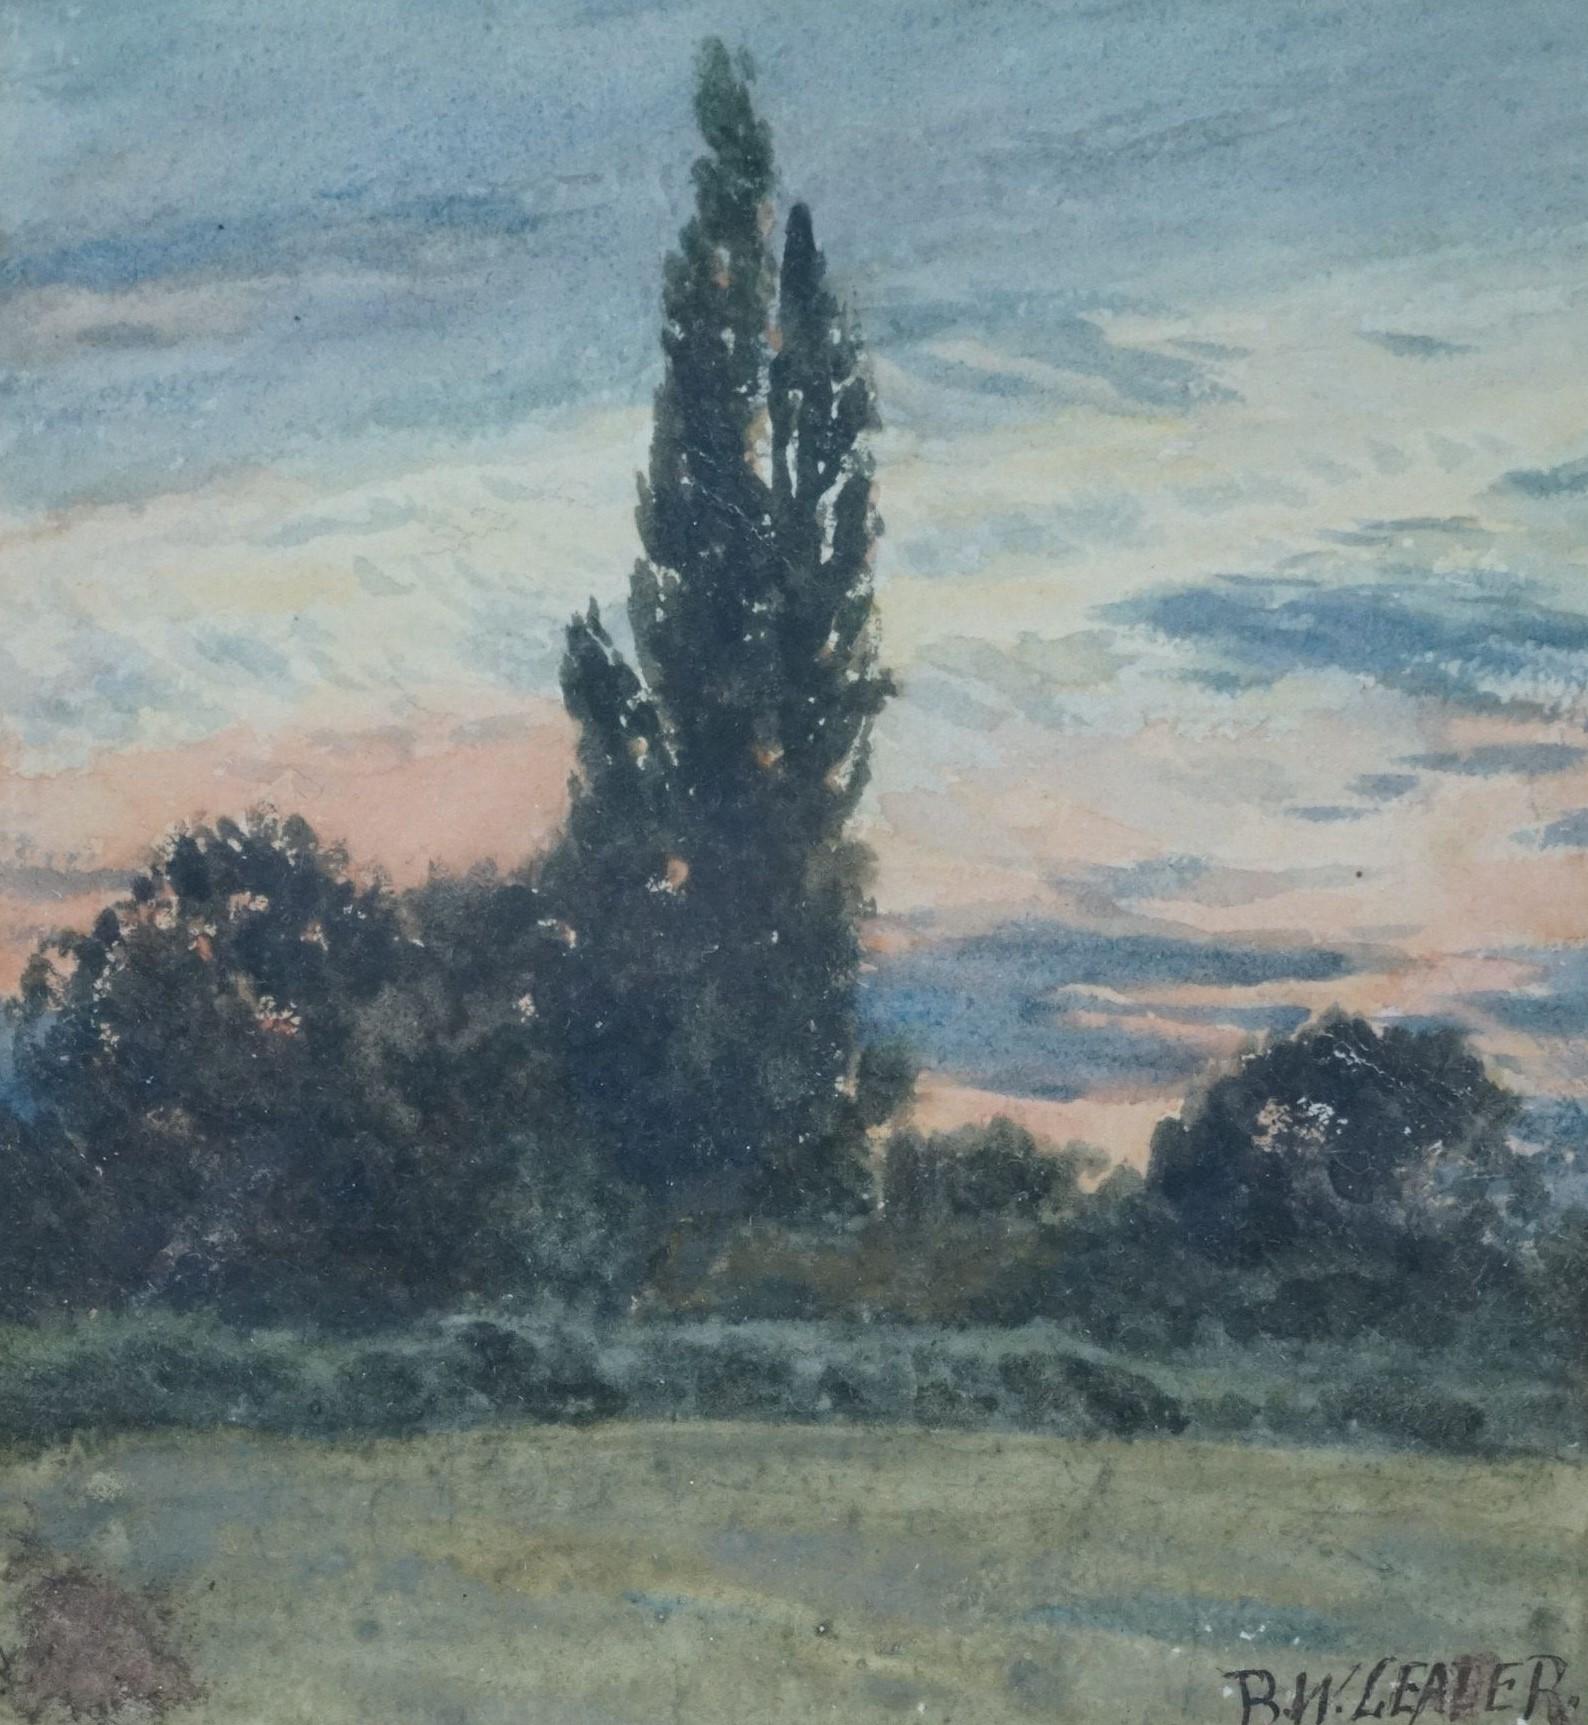 Benjamin Williams Leader RA est né à Worcester en 1831. Il a surtout peint des paysages à l'aquarelle et à l'huile.  Il s'agit d'une petite étude d'une vue de la Tamise, dans son cadre d'origine, signée.